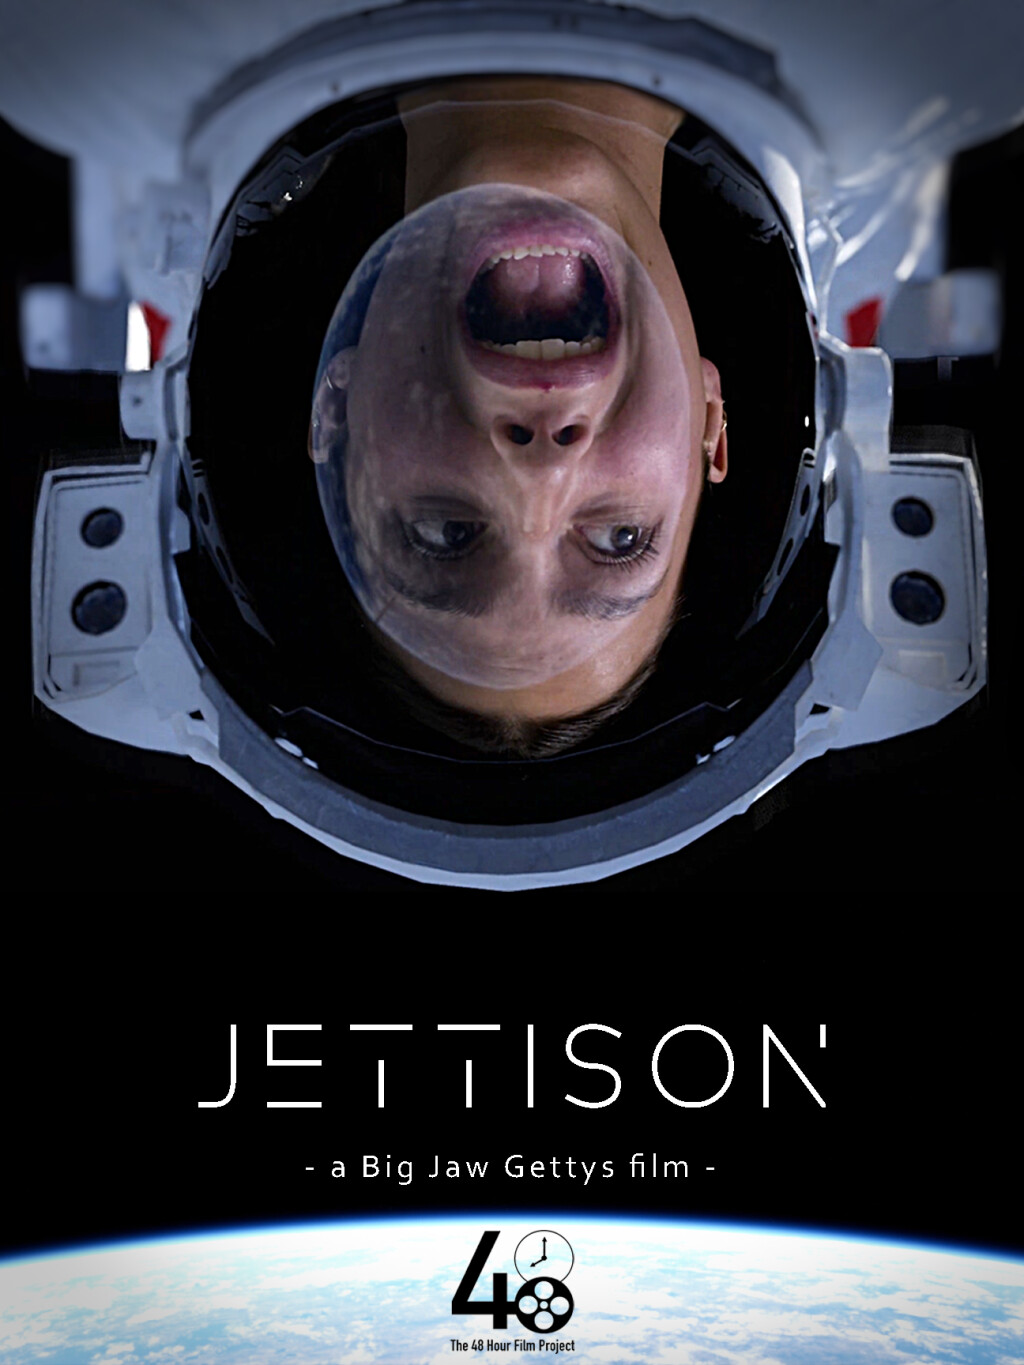 Filmposter for Jettison